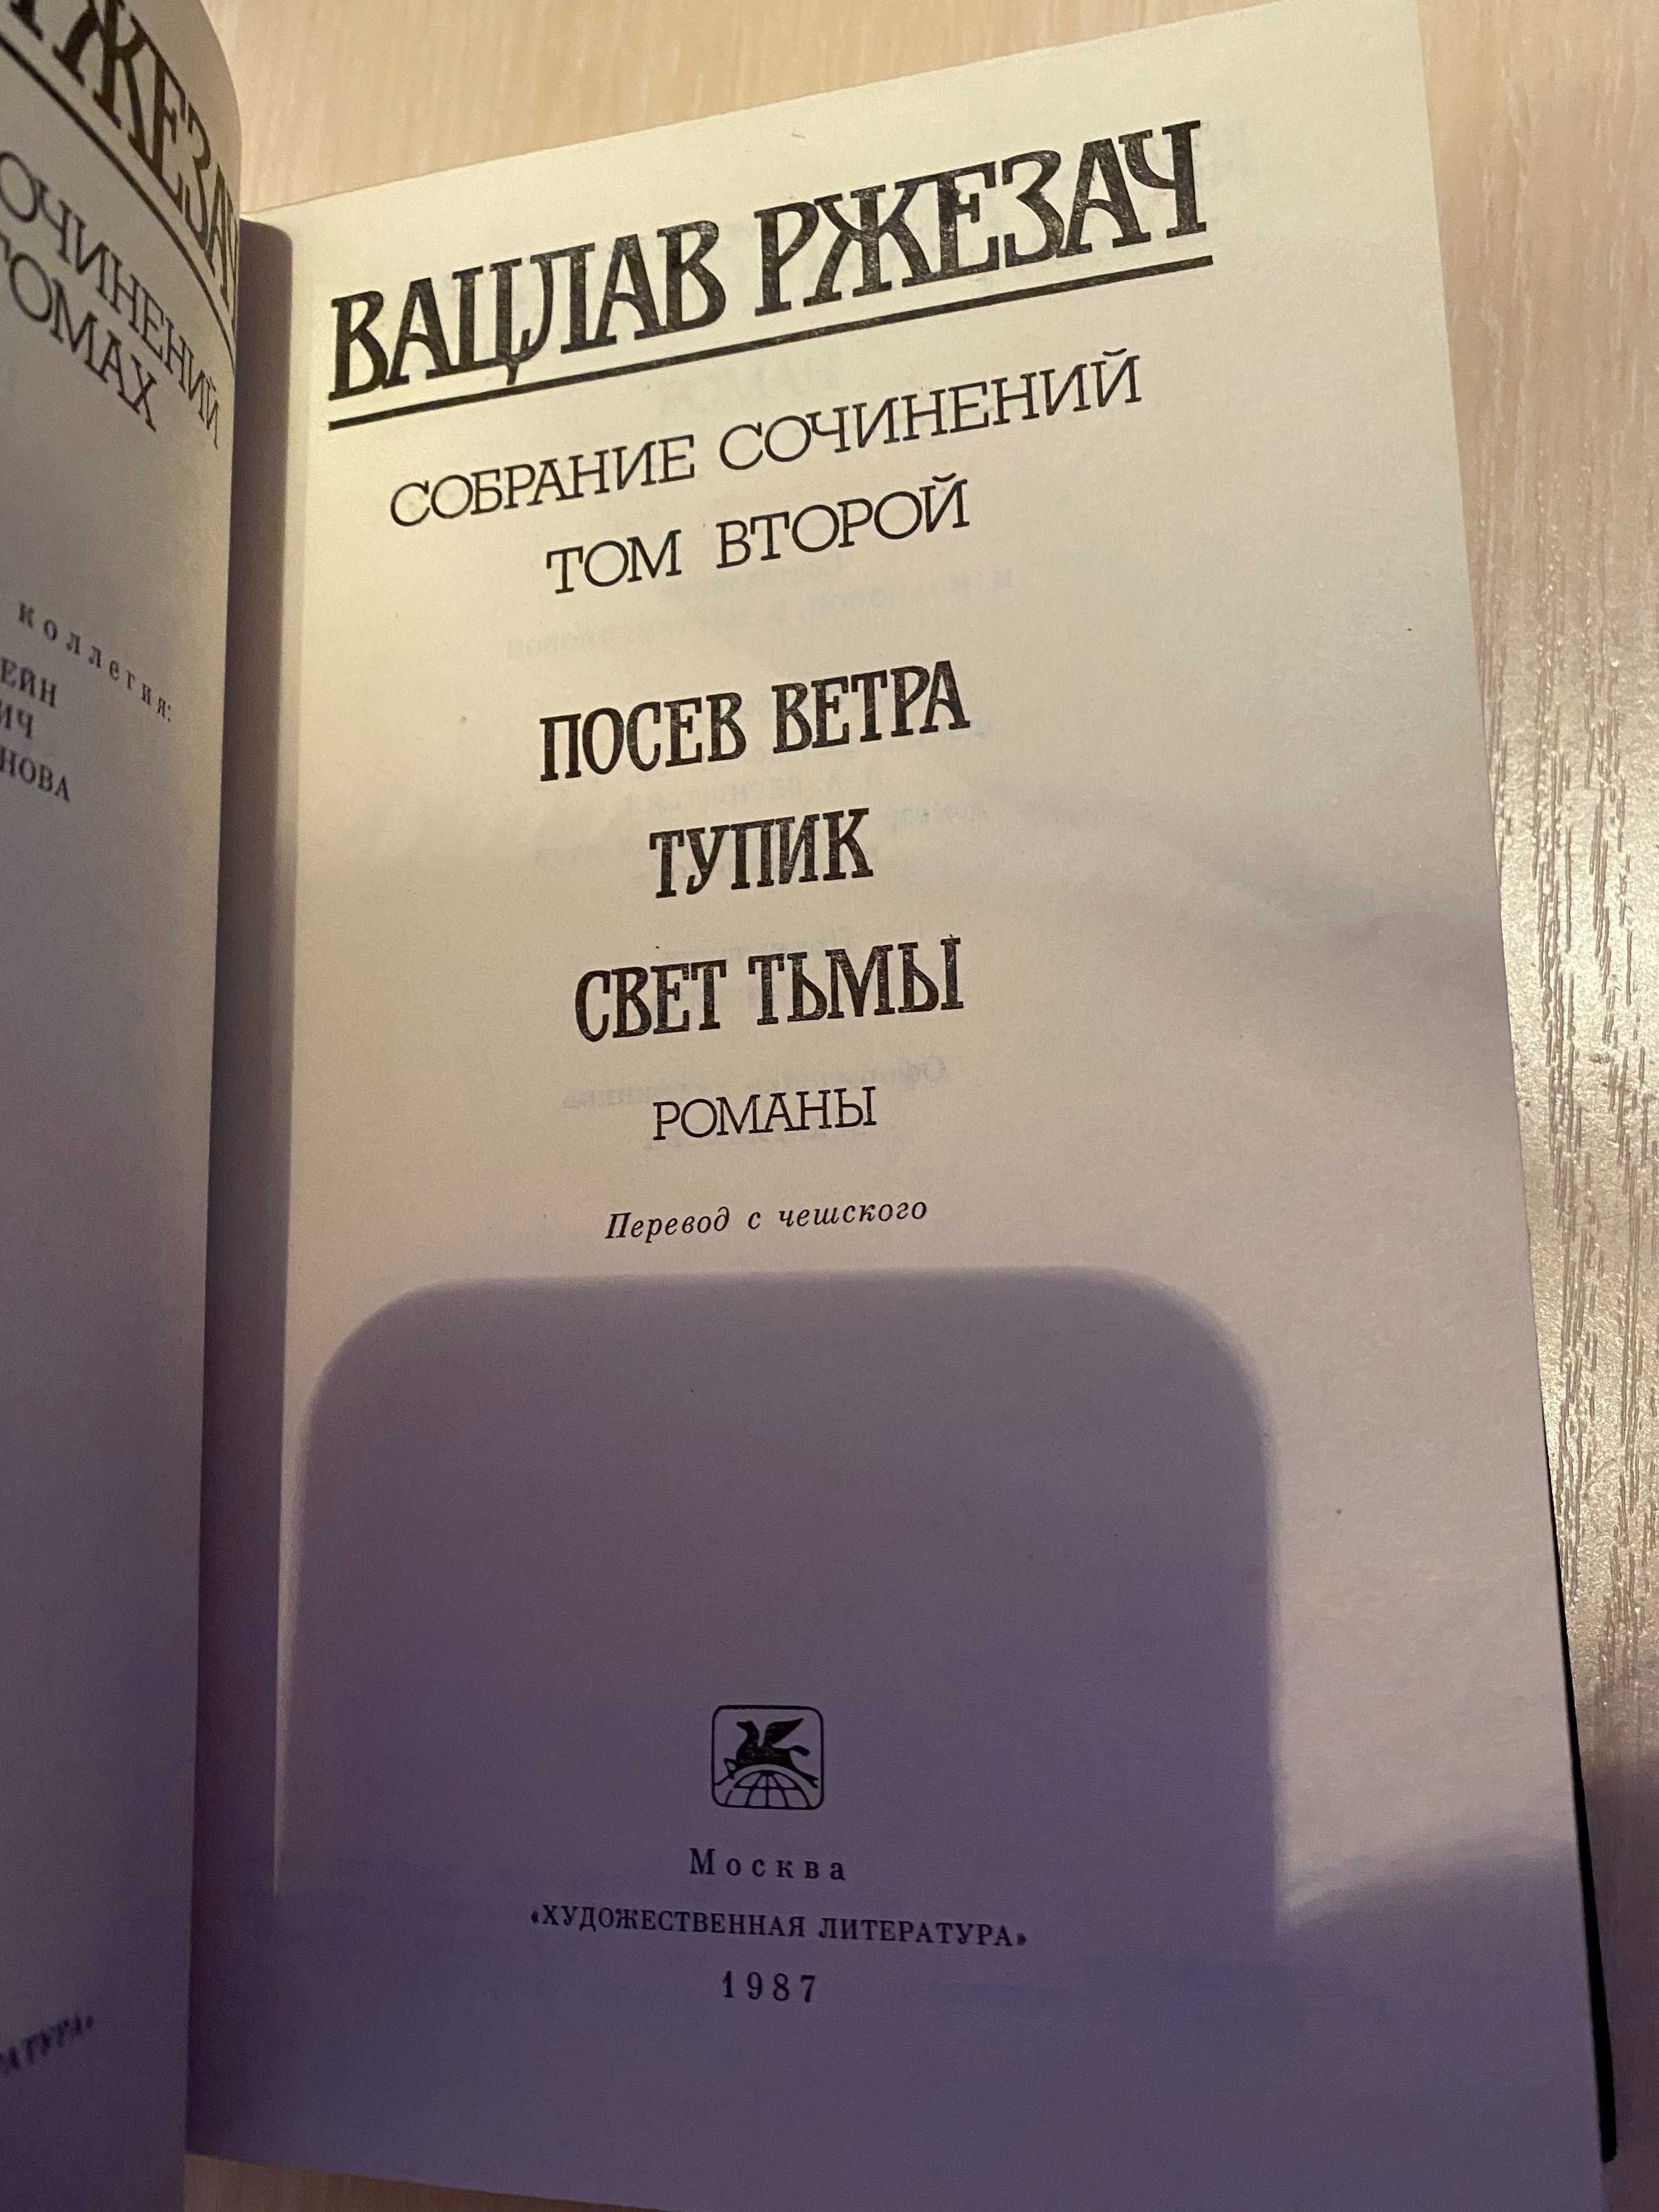 Собрание сочинений в 3 томах  Вацлав Ржезач  Идеал Новые